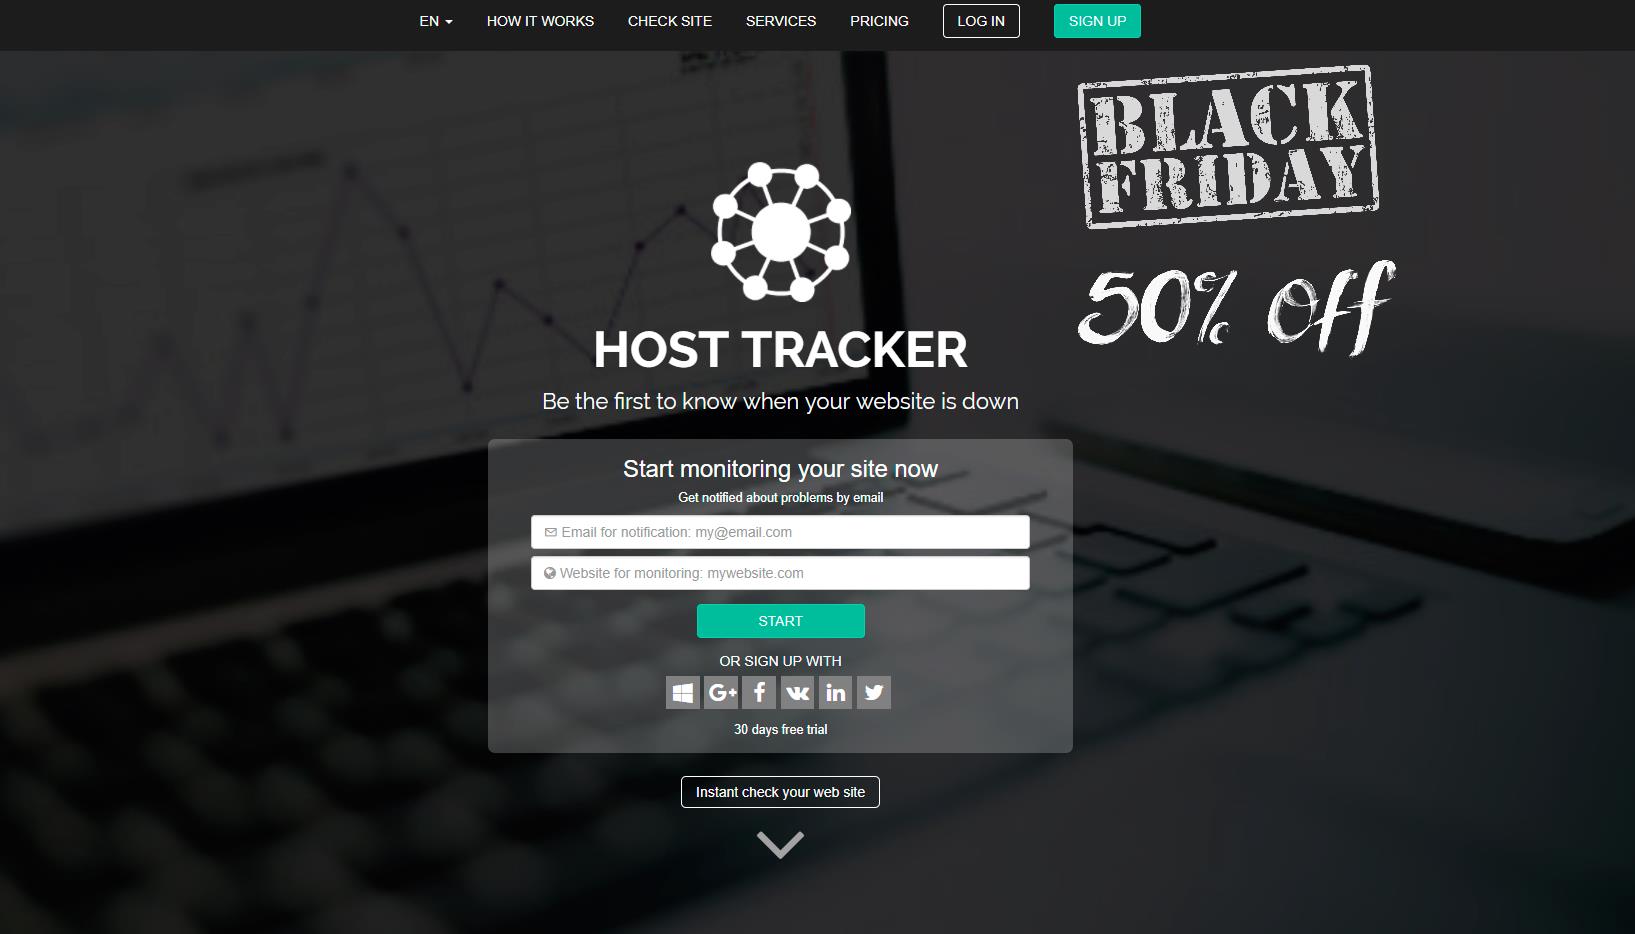 Host-Tracker.com